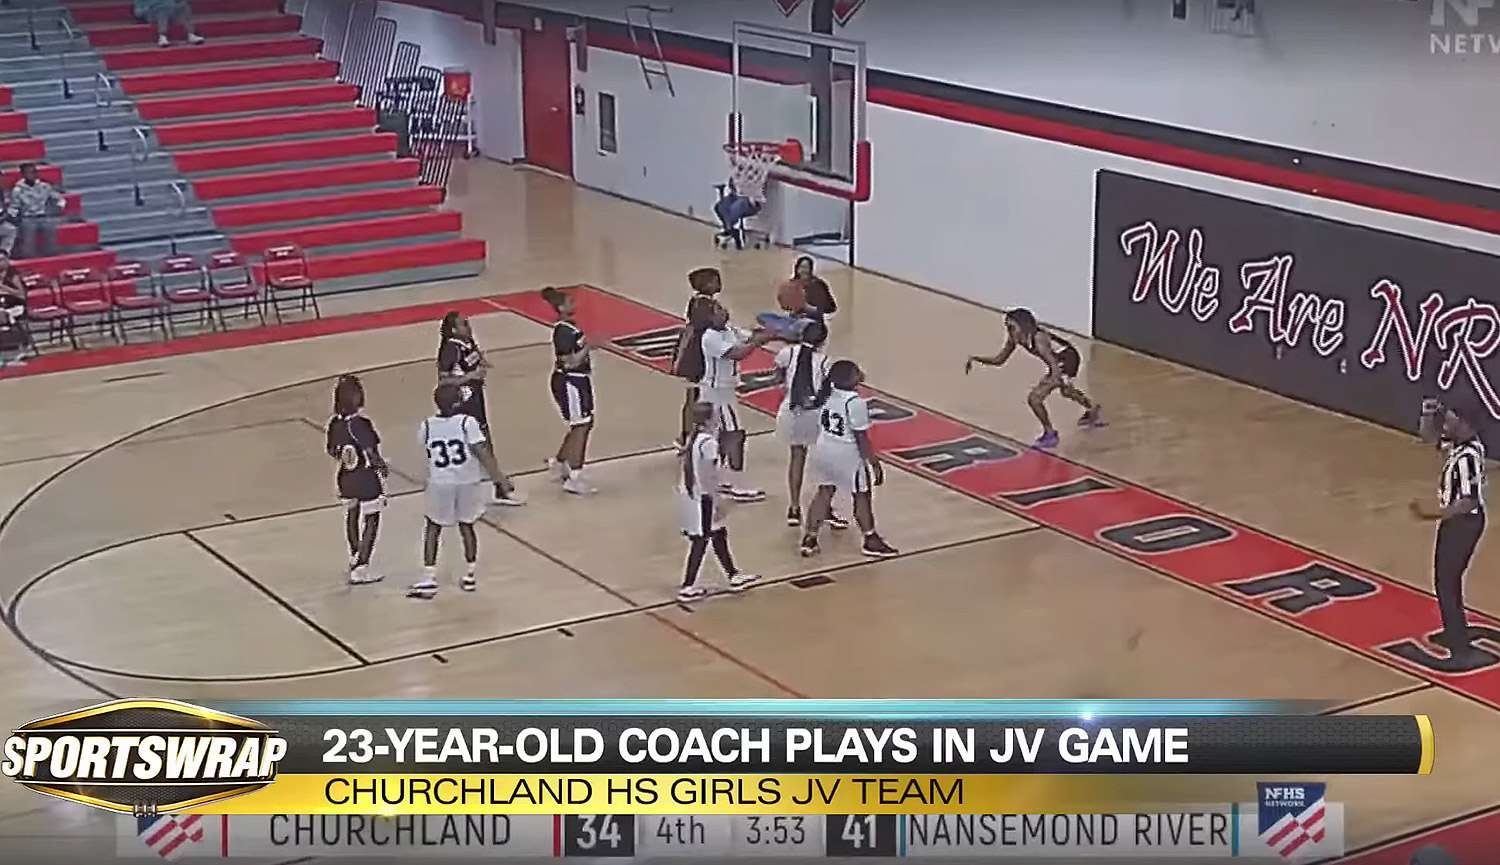 खेल के दौरान कथित रूप से 13 वर्षीय खिलाड़ी का रूप धारण करने के लिए हाई स्कूल बास्केटबॉल कोच को निकाल दिया गया